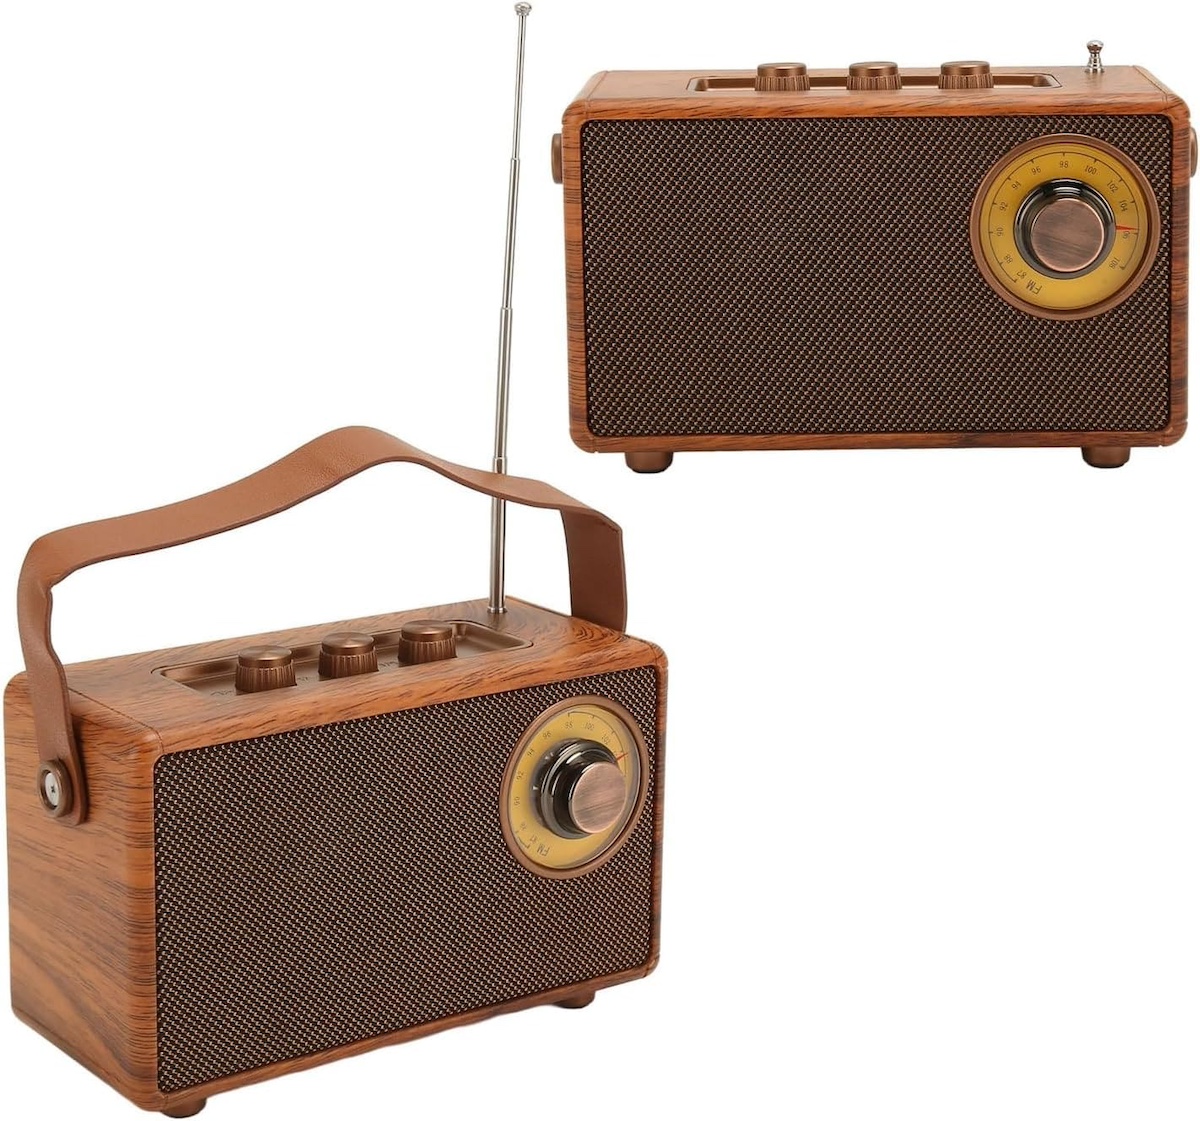 đài phát thanh mini nhỏ retro phong cách cổ điển bằng gỗ